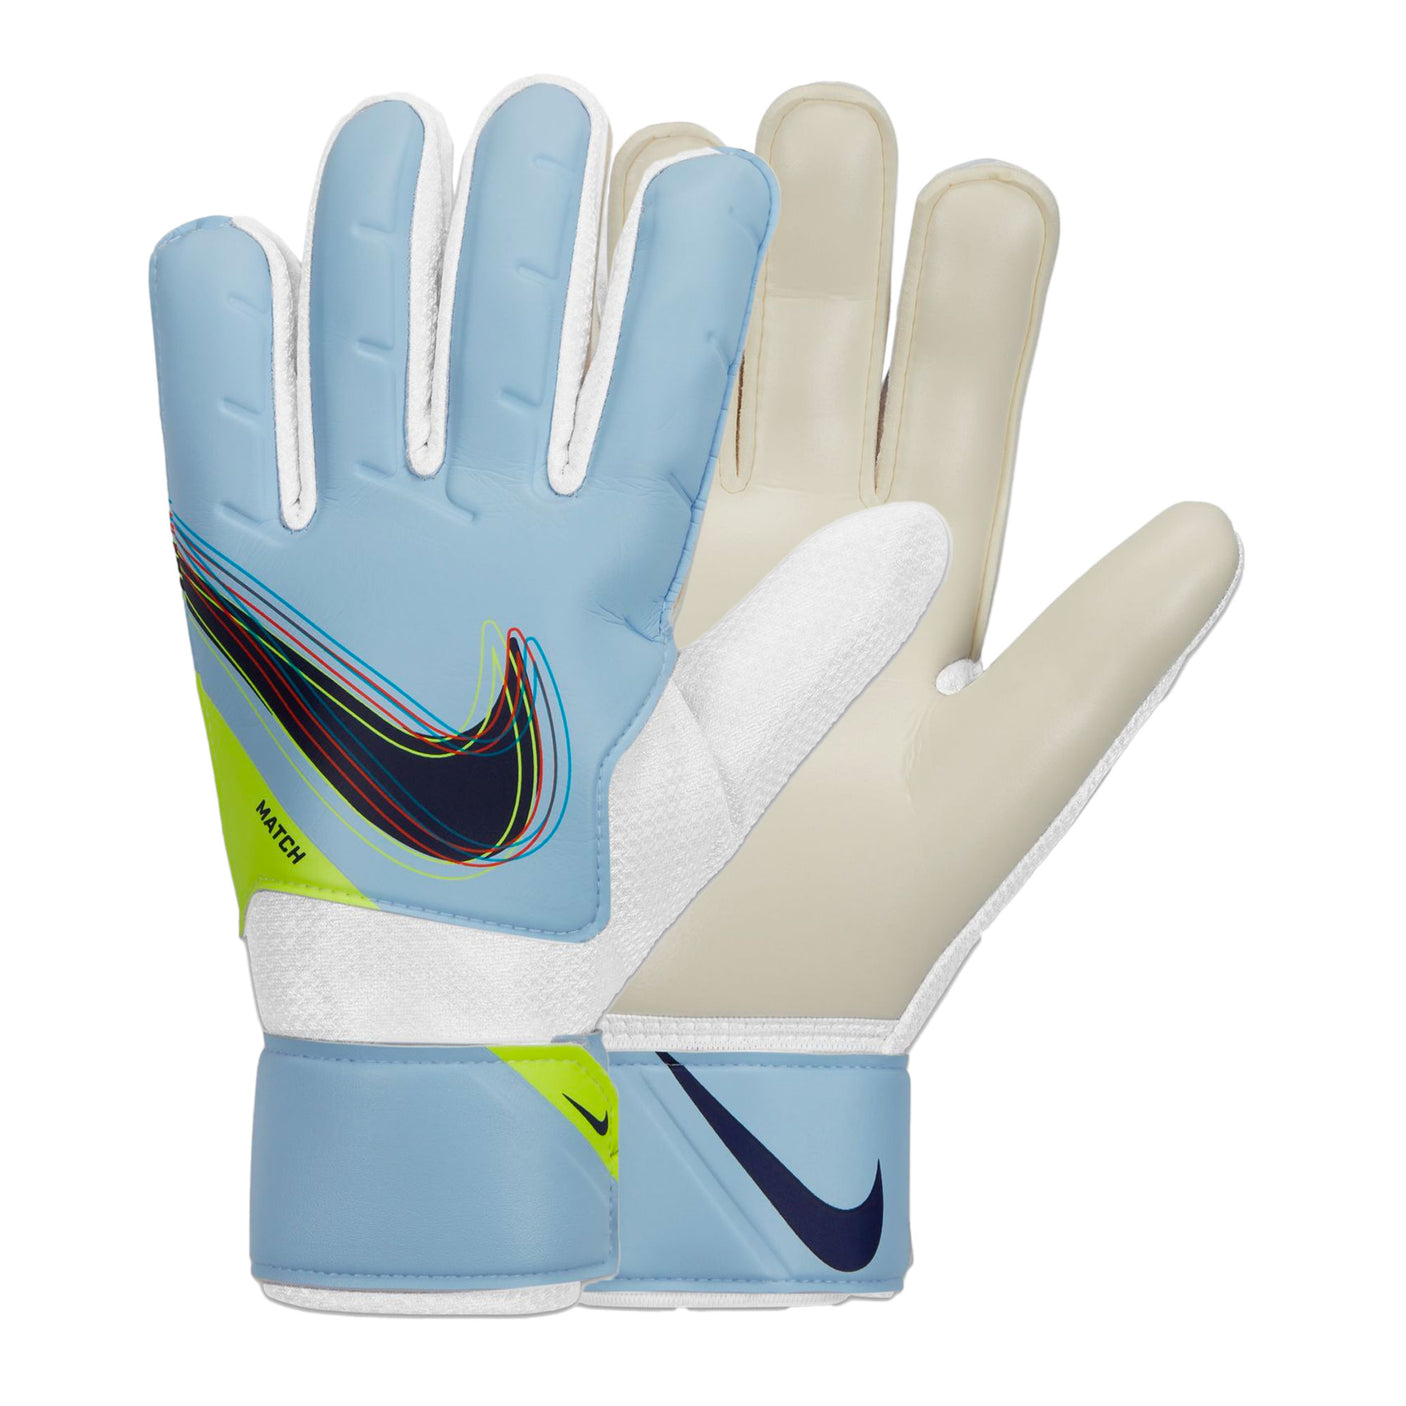 Nike Men's Goalkeeper Match Gloves Light Marine/Blackened Blue